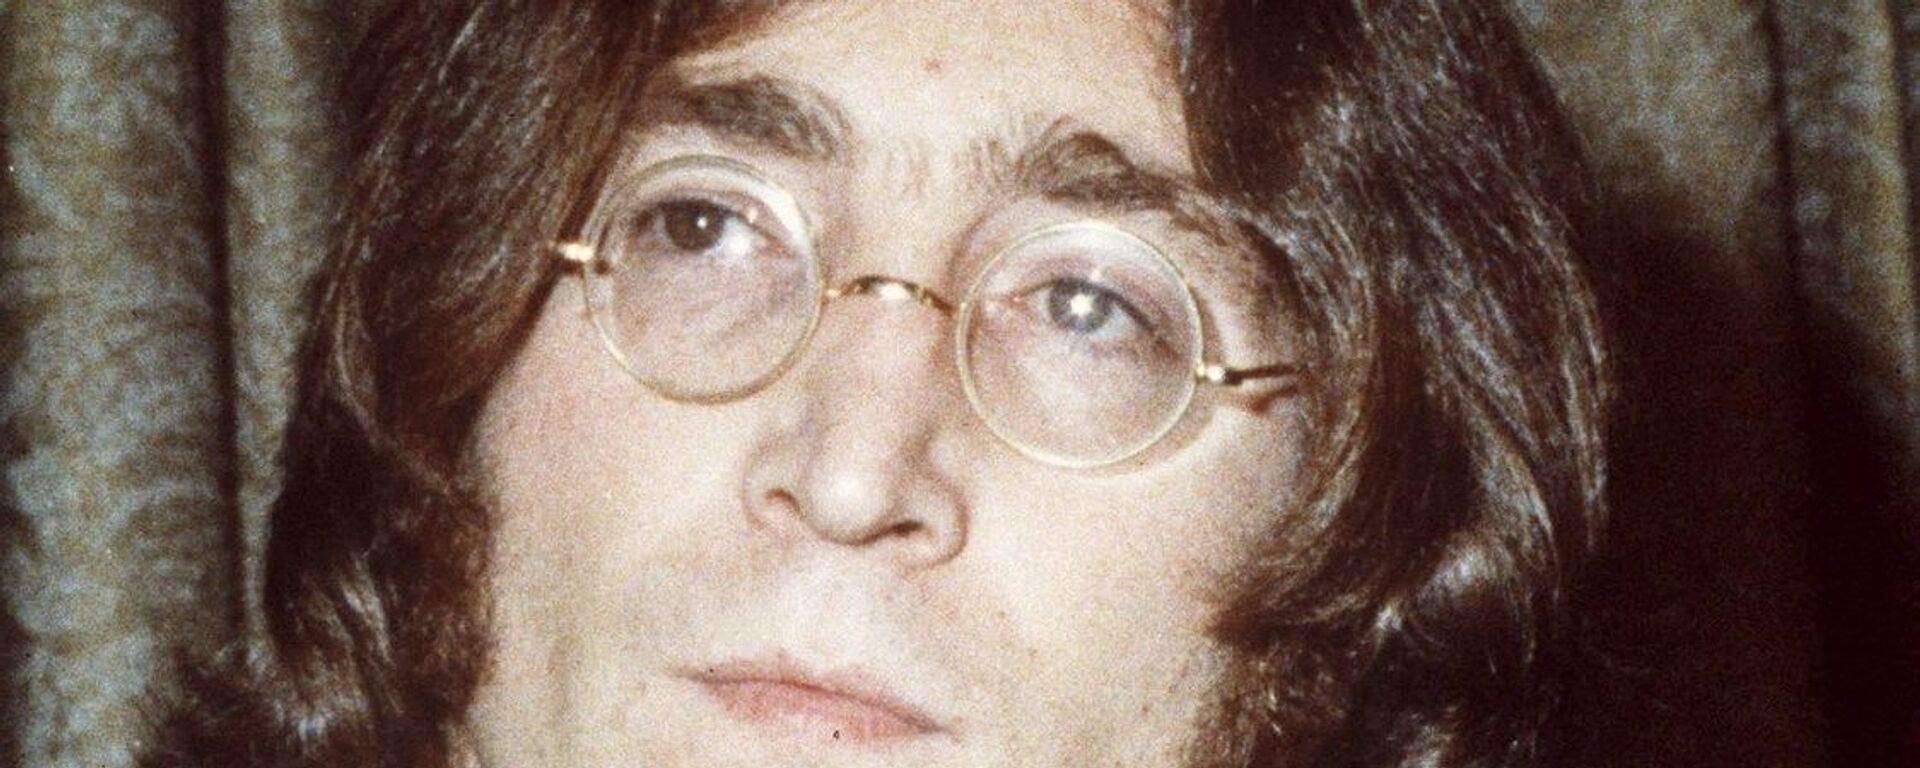  Dünyaca ünlü İngiliz rock grubu The Beatles’ın gitaristi John Lennon 8 Aralık 1980 tarihinde hayatını kaybetmişti - Sputnik Türkiye, 1920, 29.09.2021